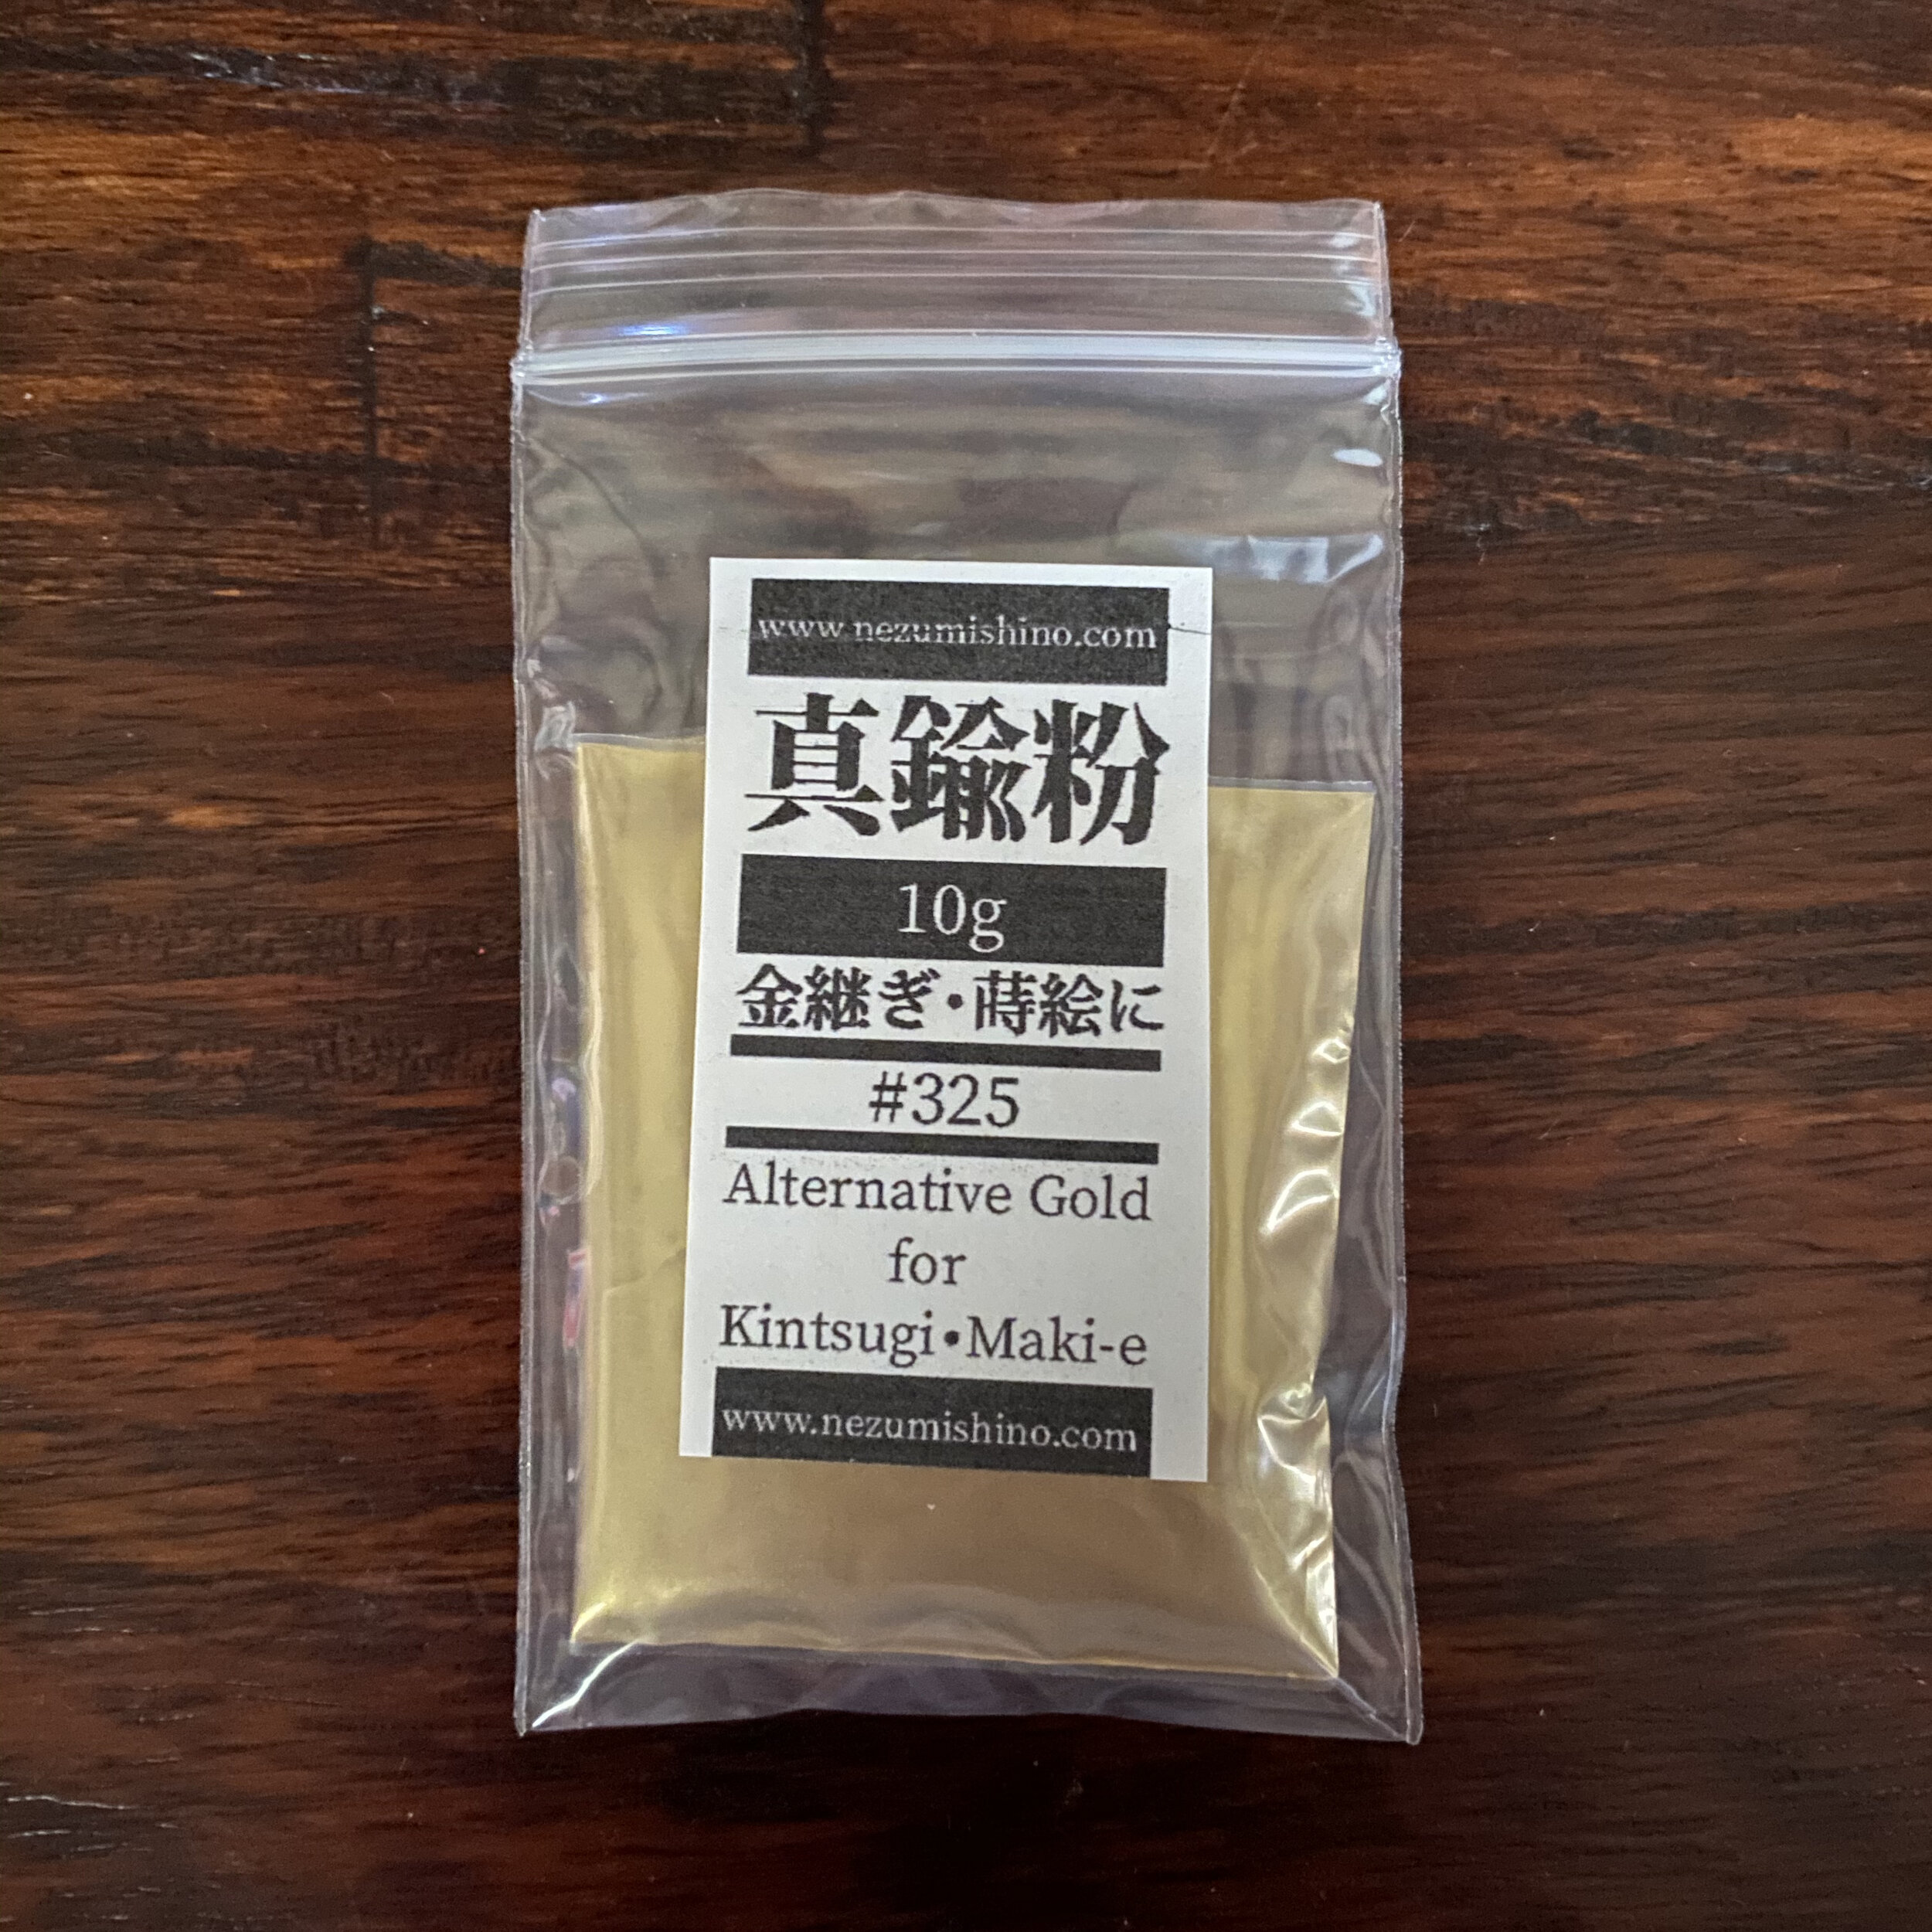 Kintsugi Repair Kit. . Gold powders made in Japan